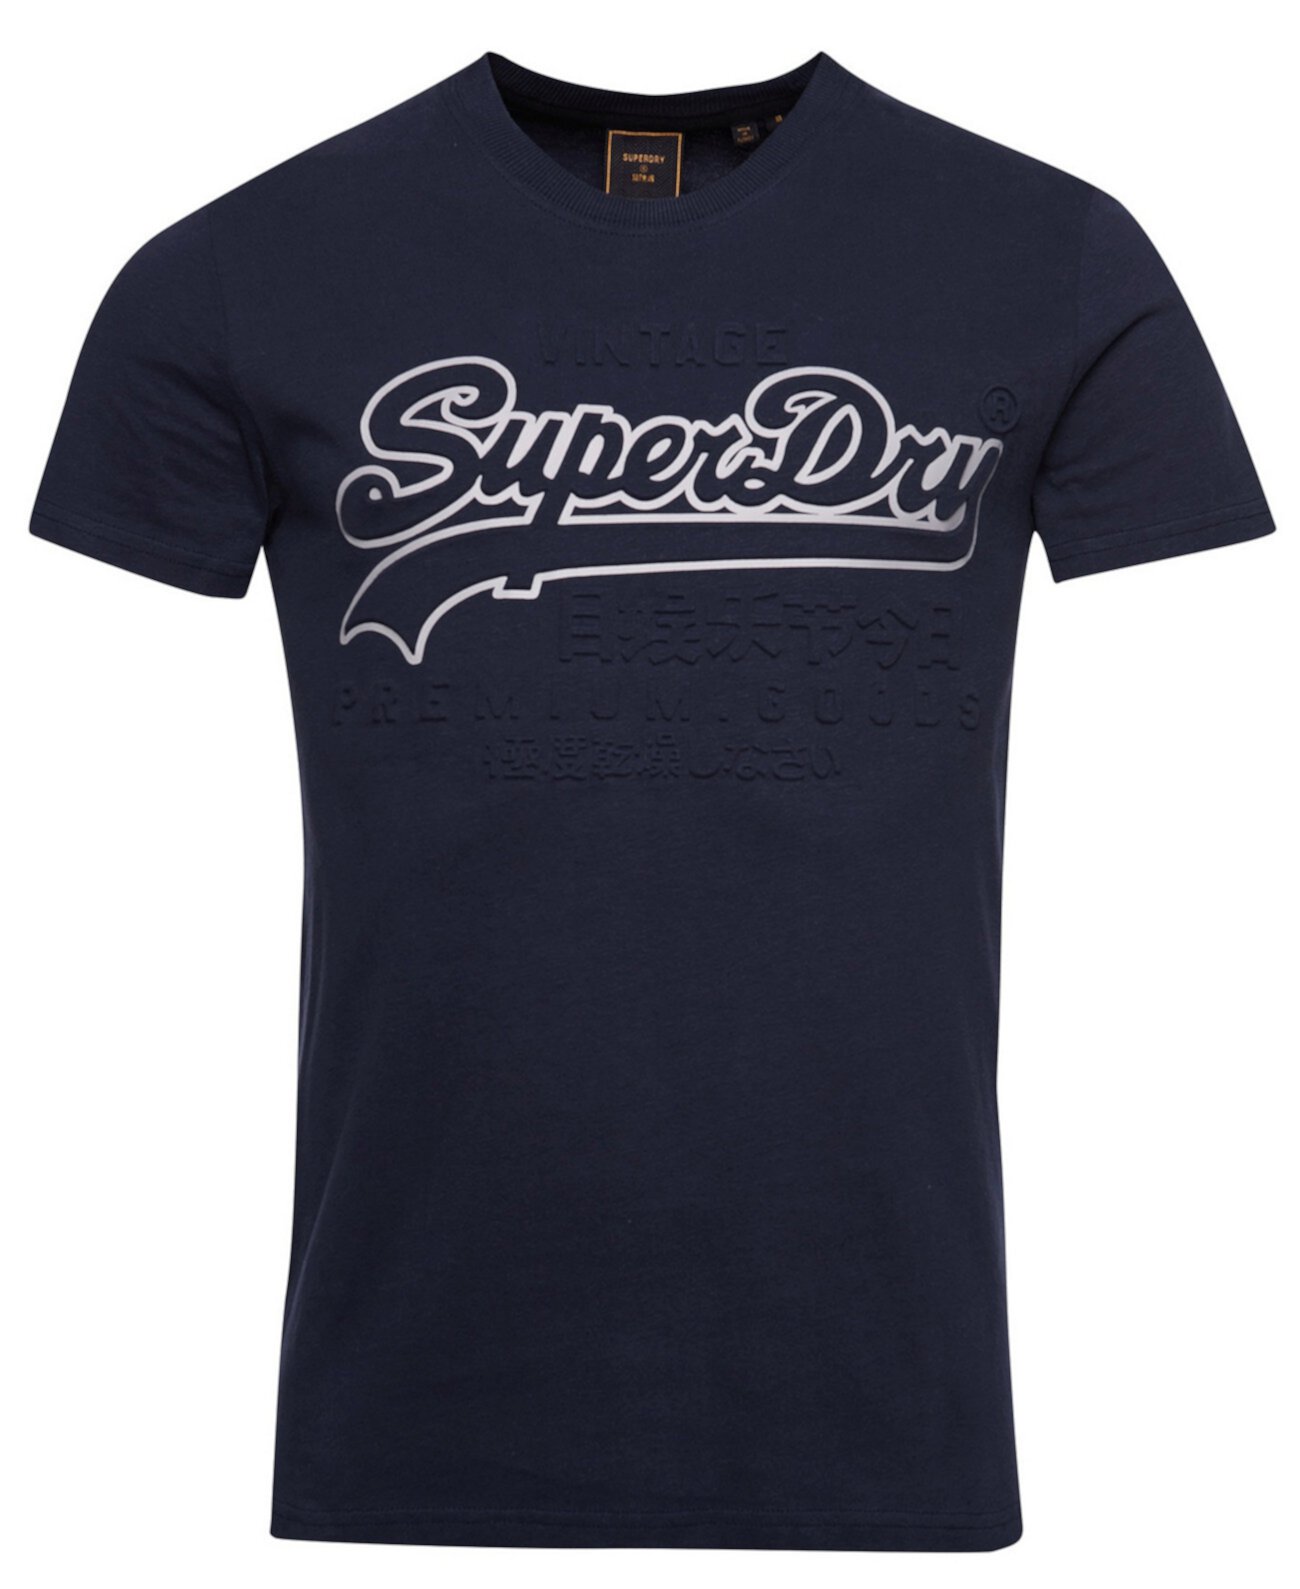 Мужская футболка с тисненым логотипом в винтажном стиле Superdry